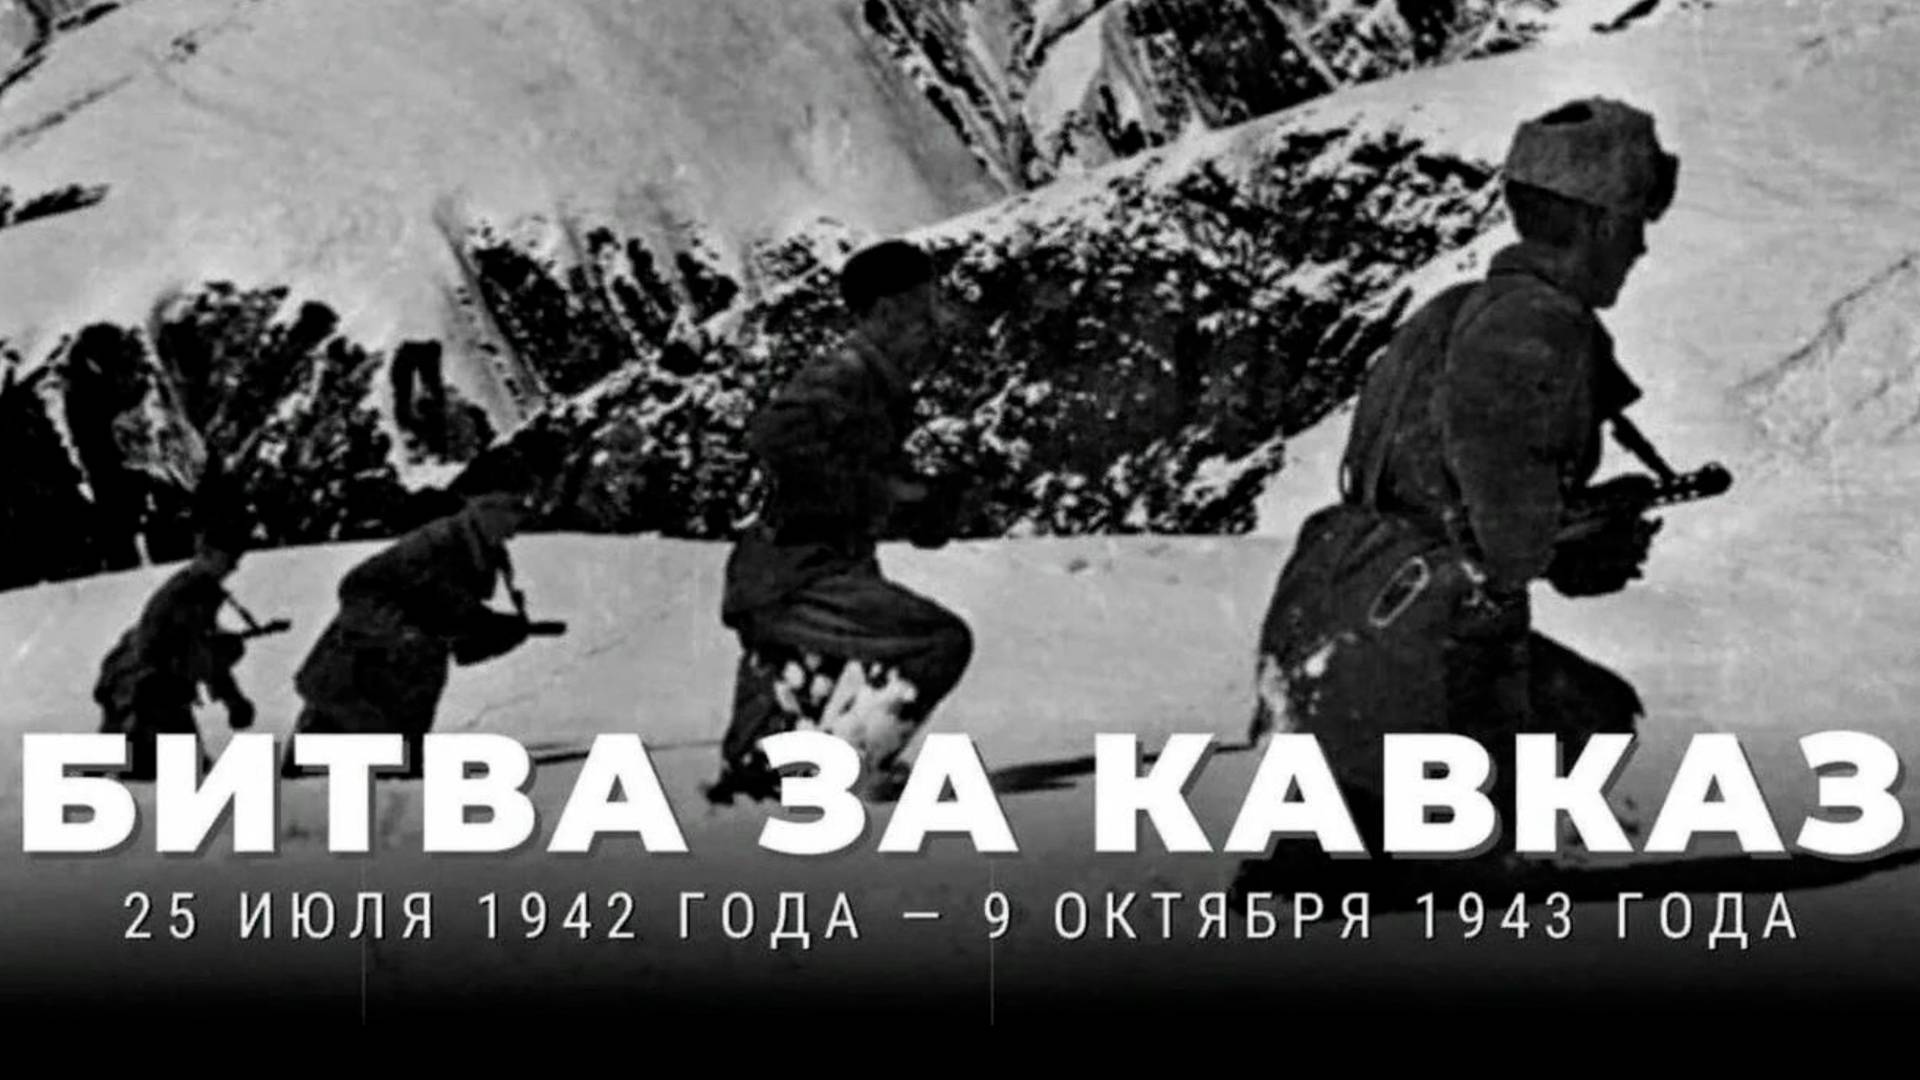 В России отмечается памятная дата - годовщина начала Битвы за Кавказ